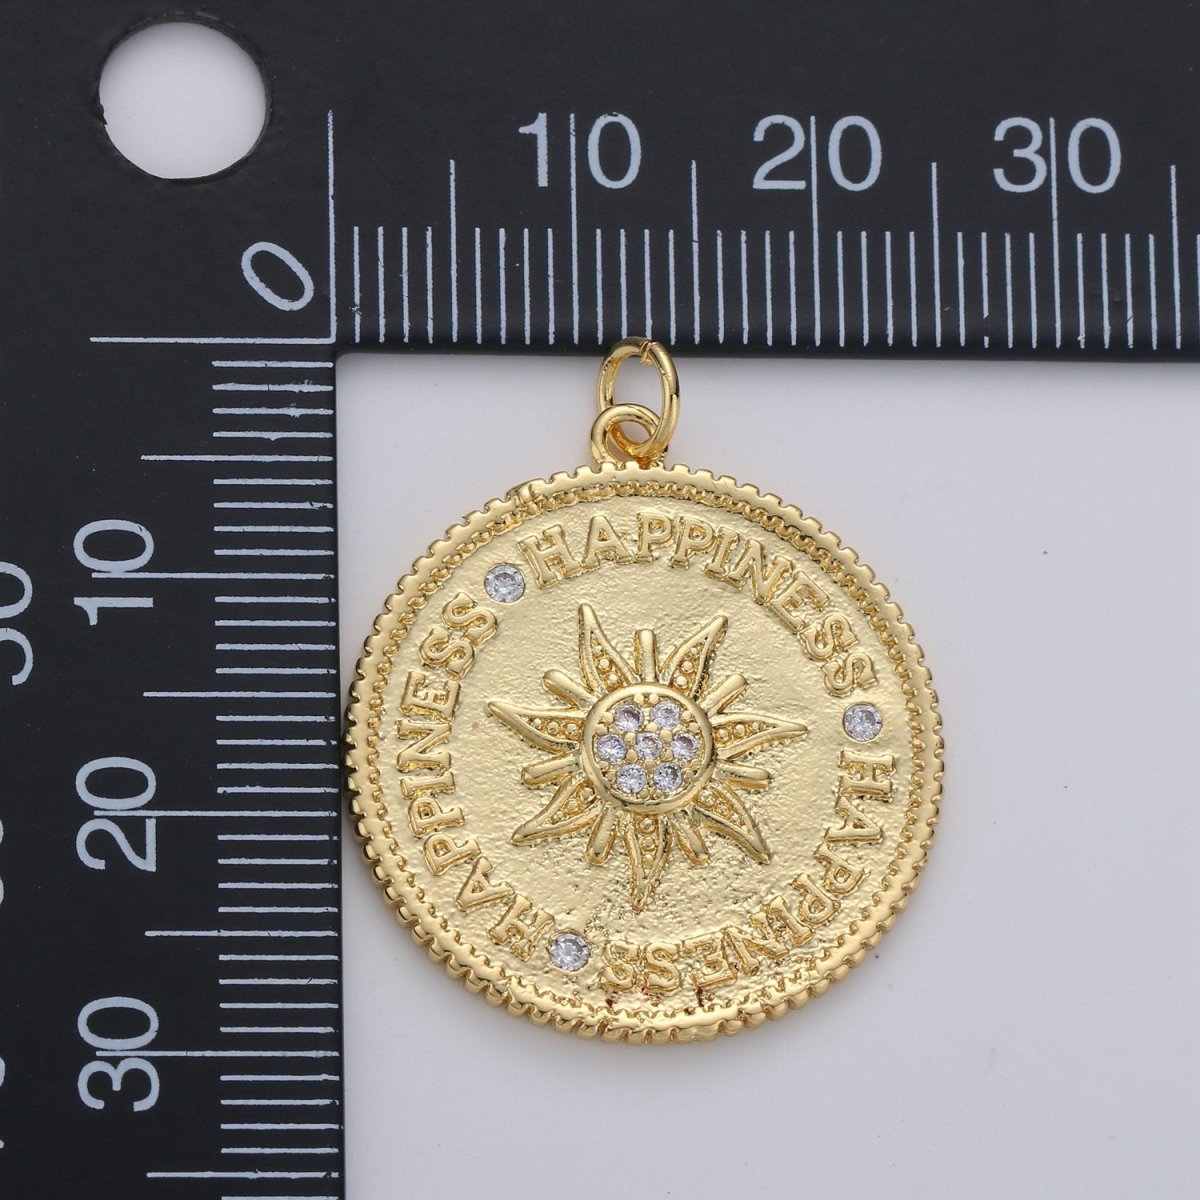 Sunburst pendant, Gold sun medallion, celestial sunburst charm, celestial sun pendant dangle for Jewelry Making Supply D-120 - DLUXCA